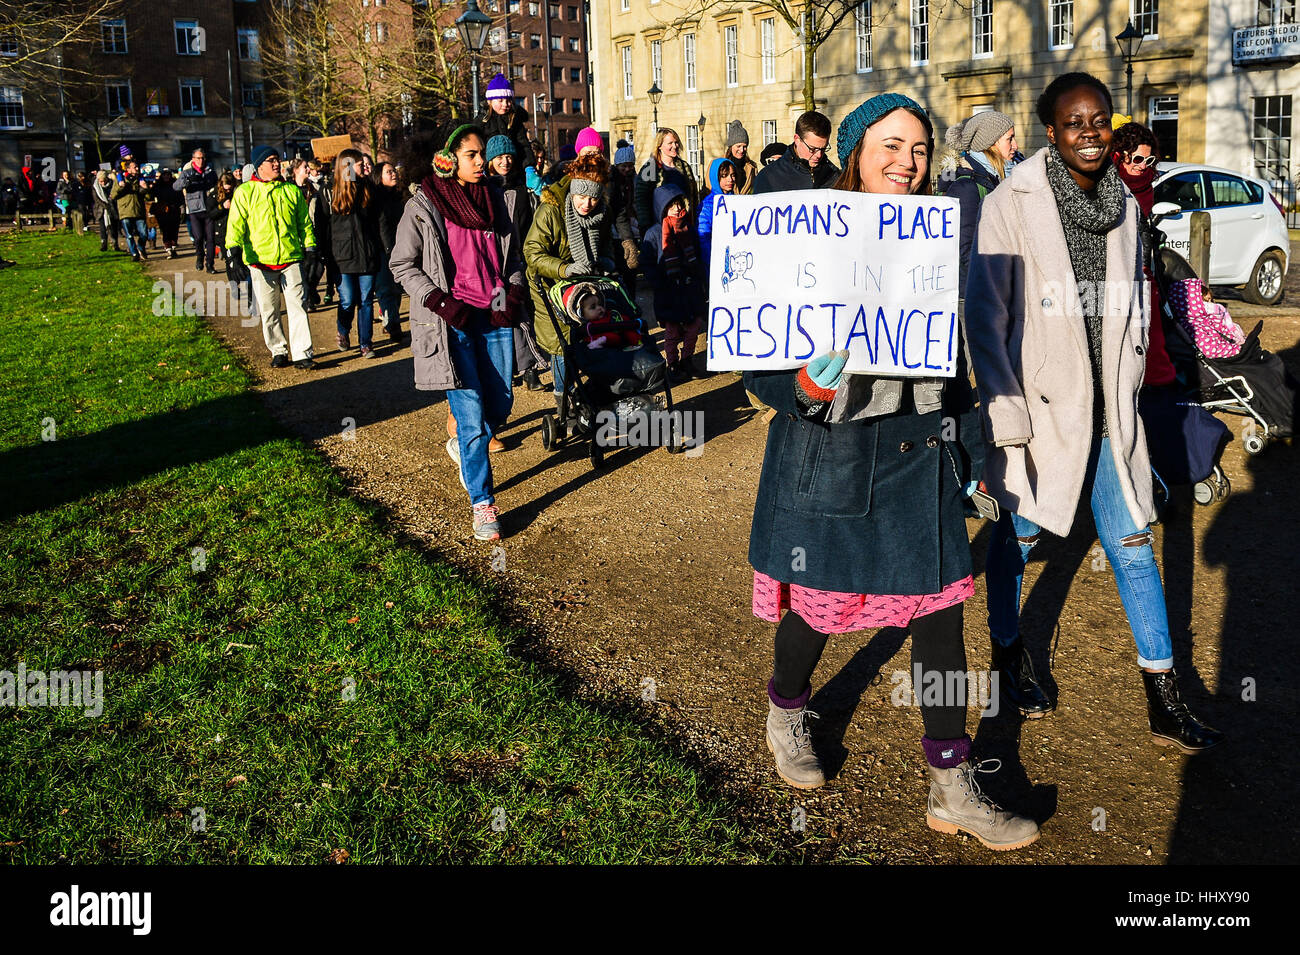 Les manifestants portent des pancartes à Bristol à une marche pour promouvoir les droits des femmes dans le sillage de l'élection américaine. Banque D'Images